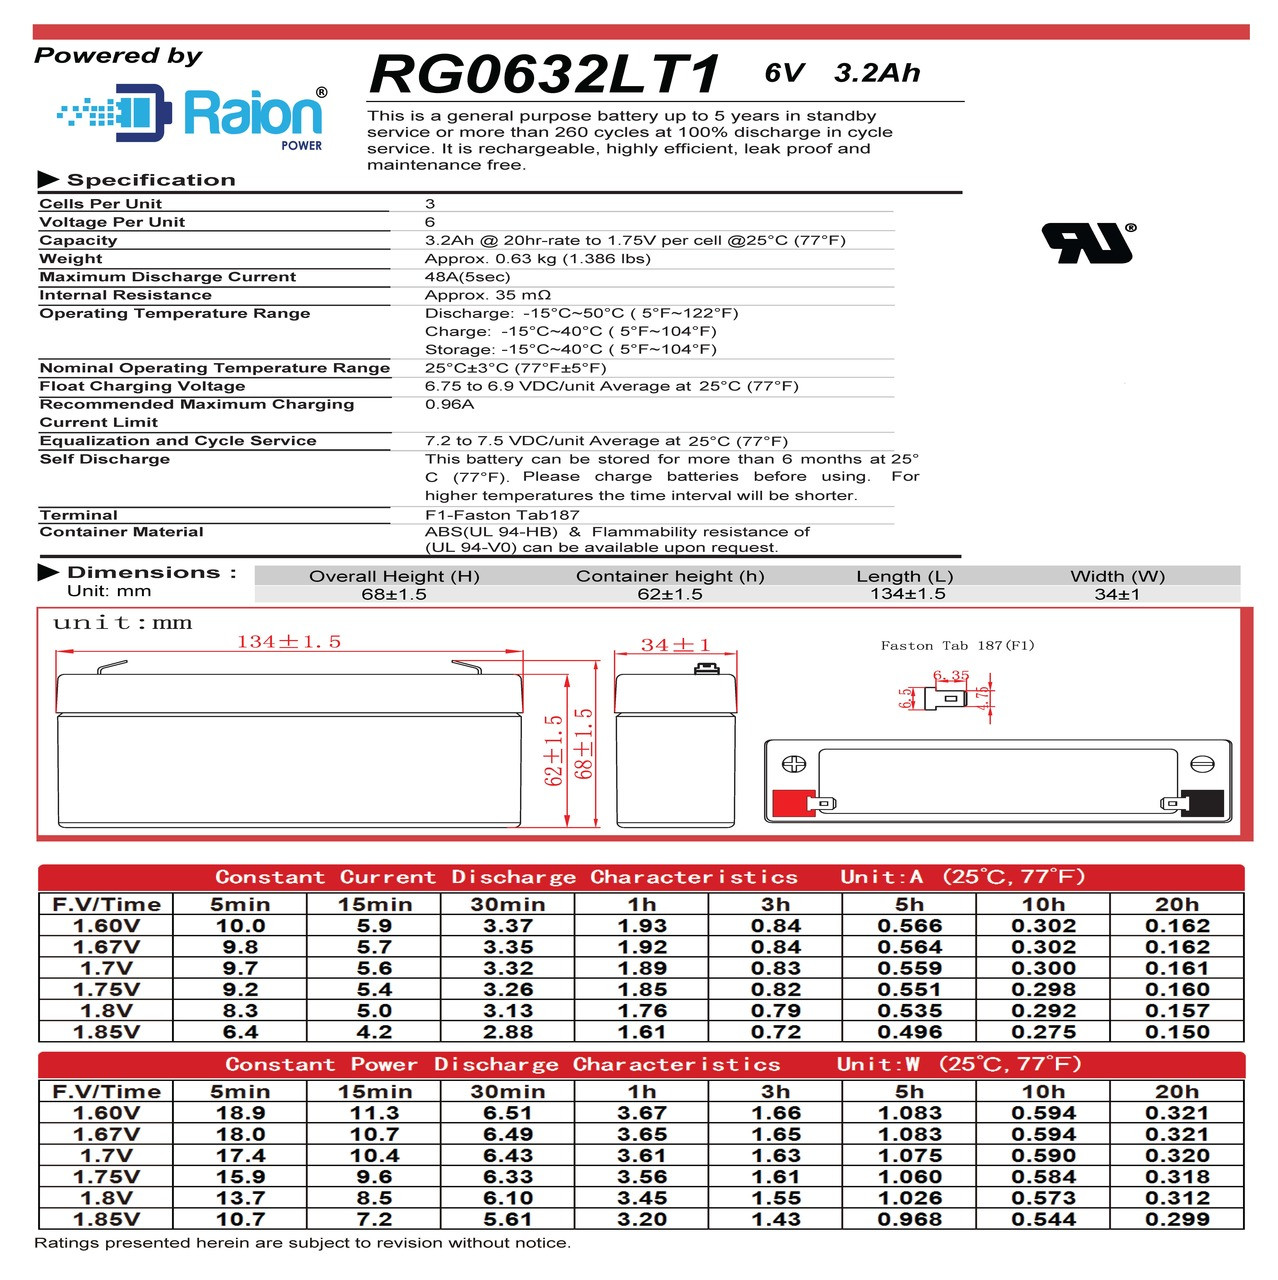 Raion Power RG0632LT1 6V 3.2Ah Battery Data Sheet for Health o meter 450 Scale